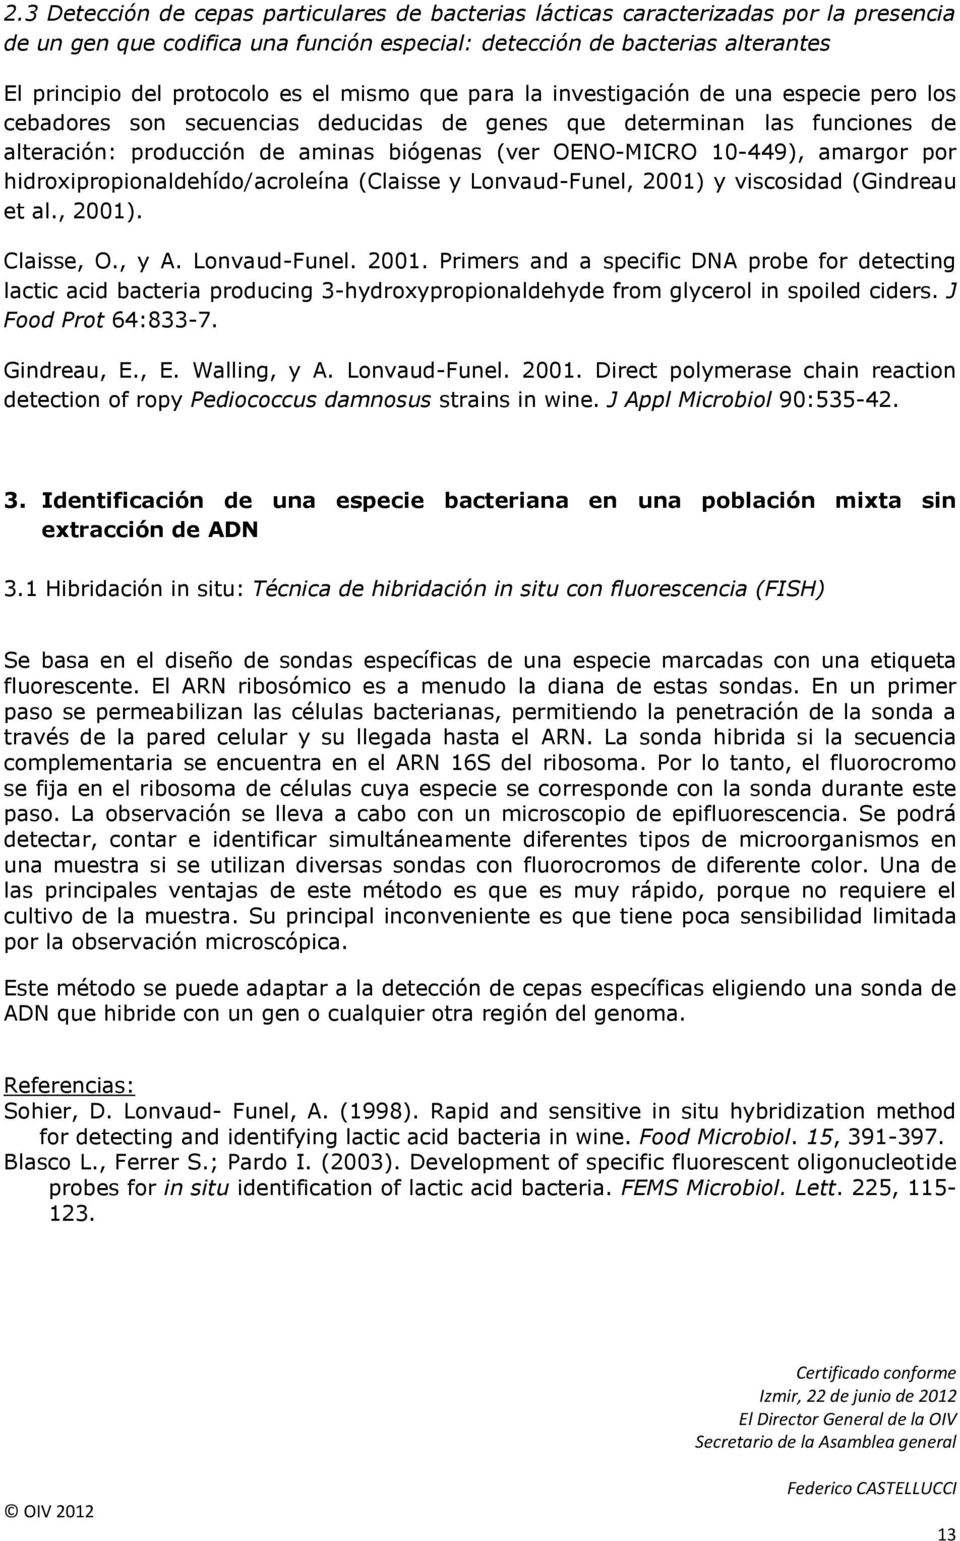 10-449), amargor por hidroxipropionaldehído/acroleína (Claisse y Lonvaud-Funel, 2001)